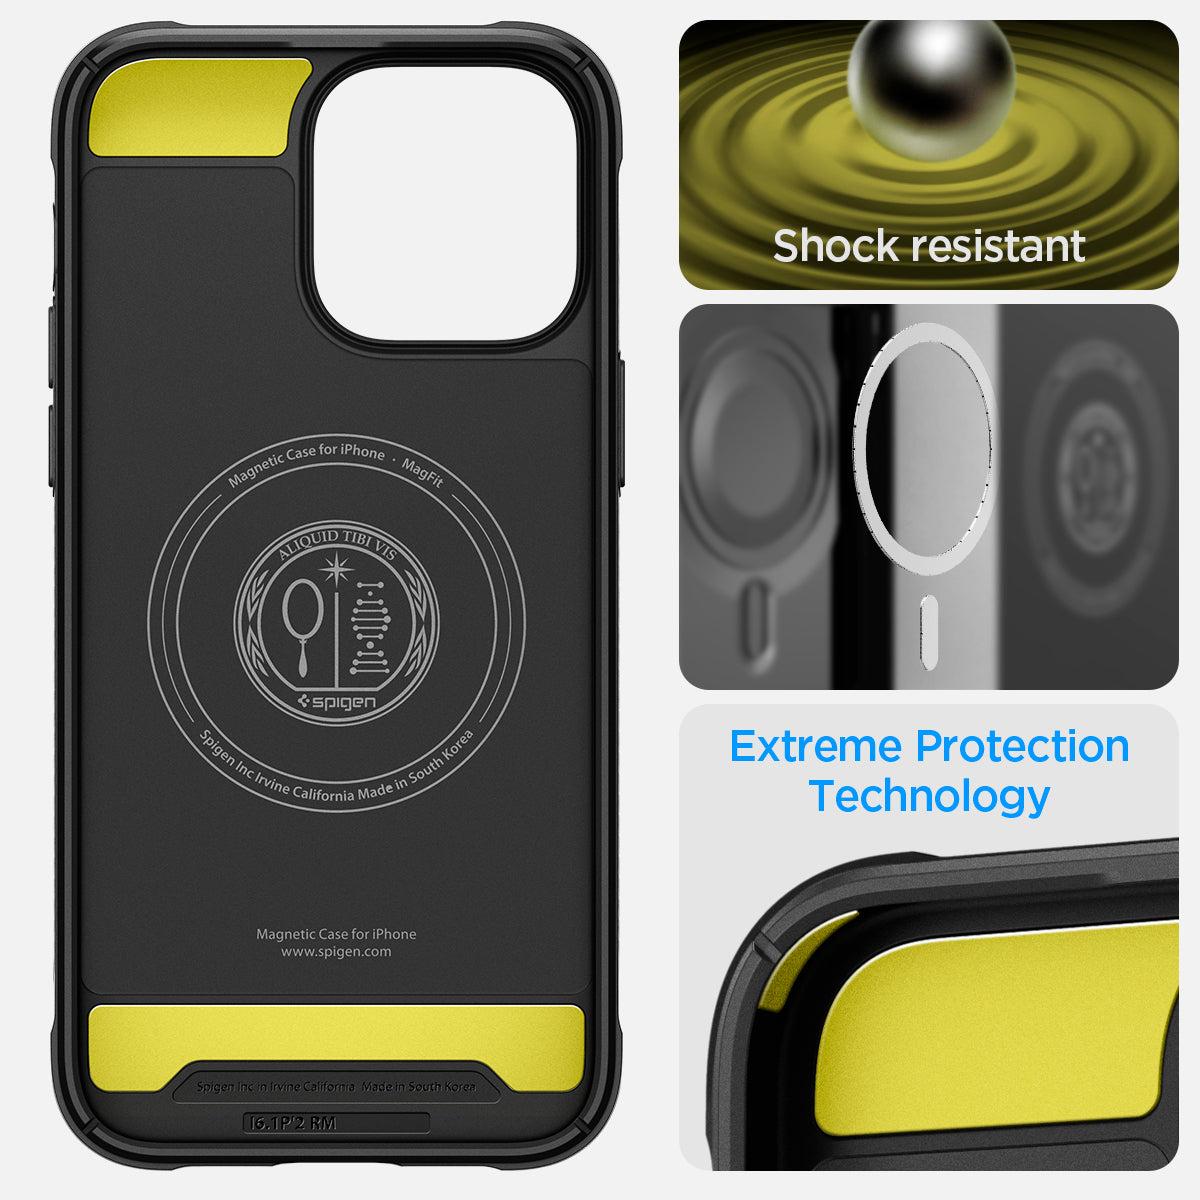 Spigen® Rugged Armor™ (MagFit) ACS04956 iPhone 14 Pro Case - Matte Black